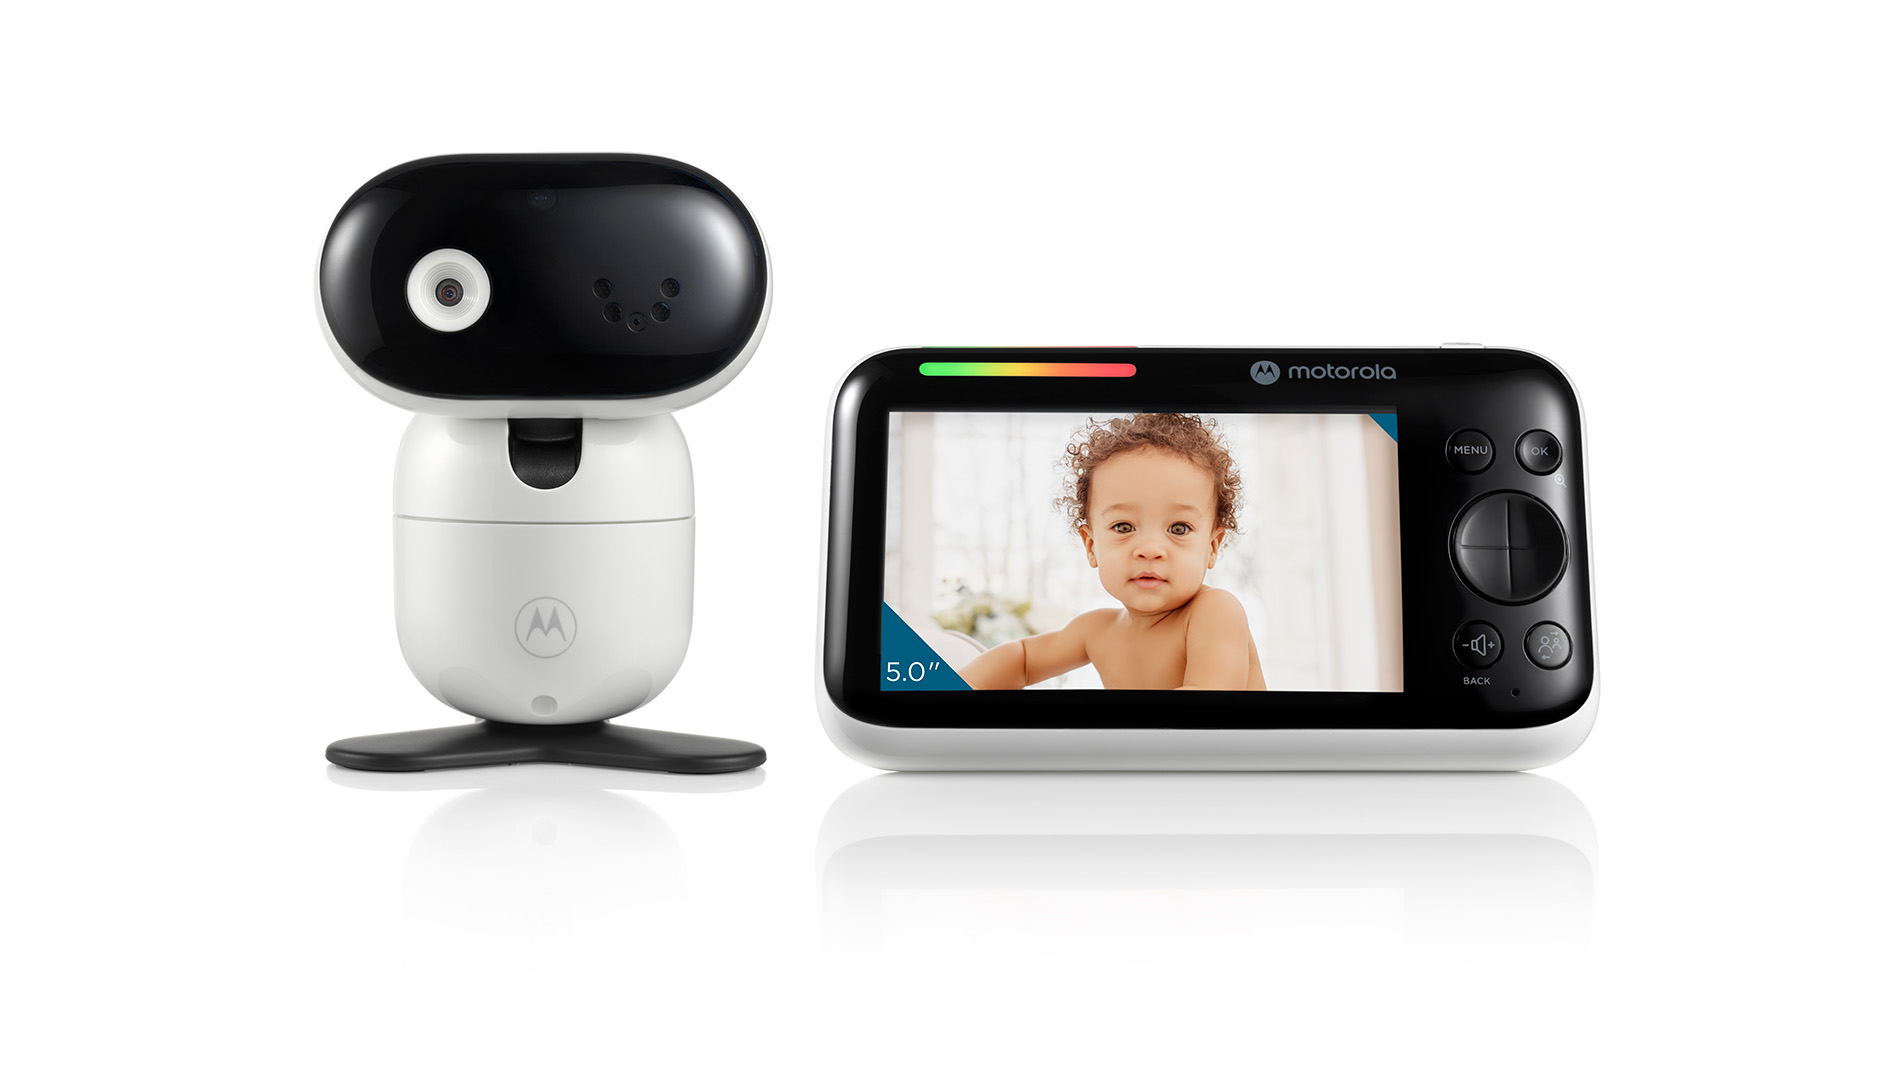 PIP1510 - camera and monitor - forward facing - product image